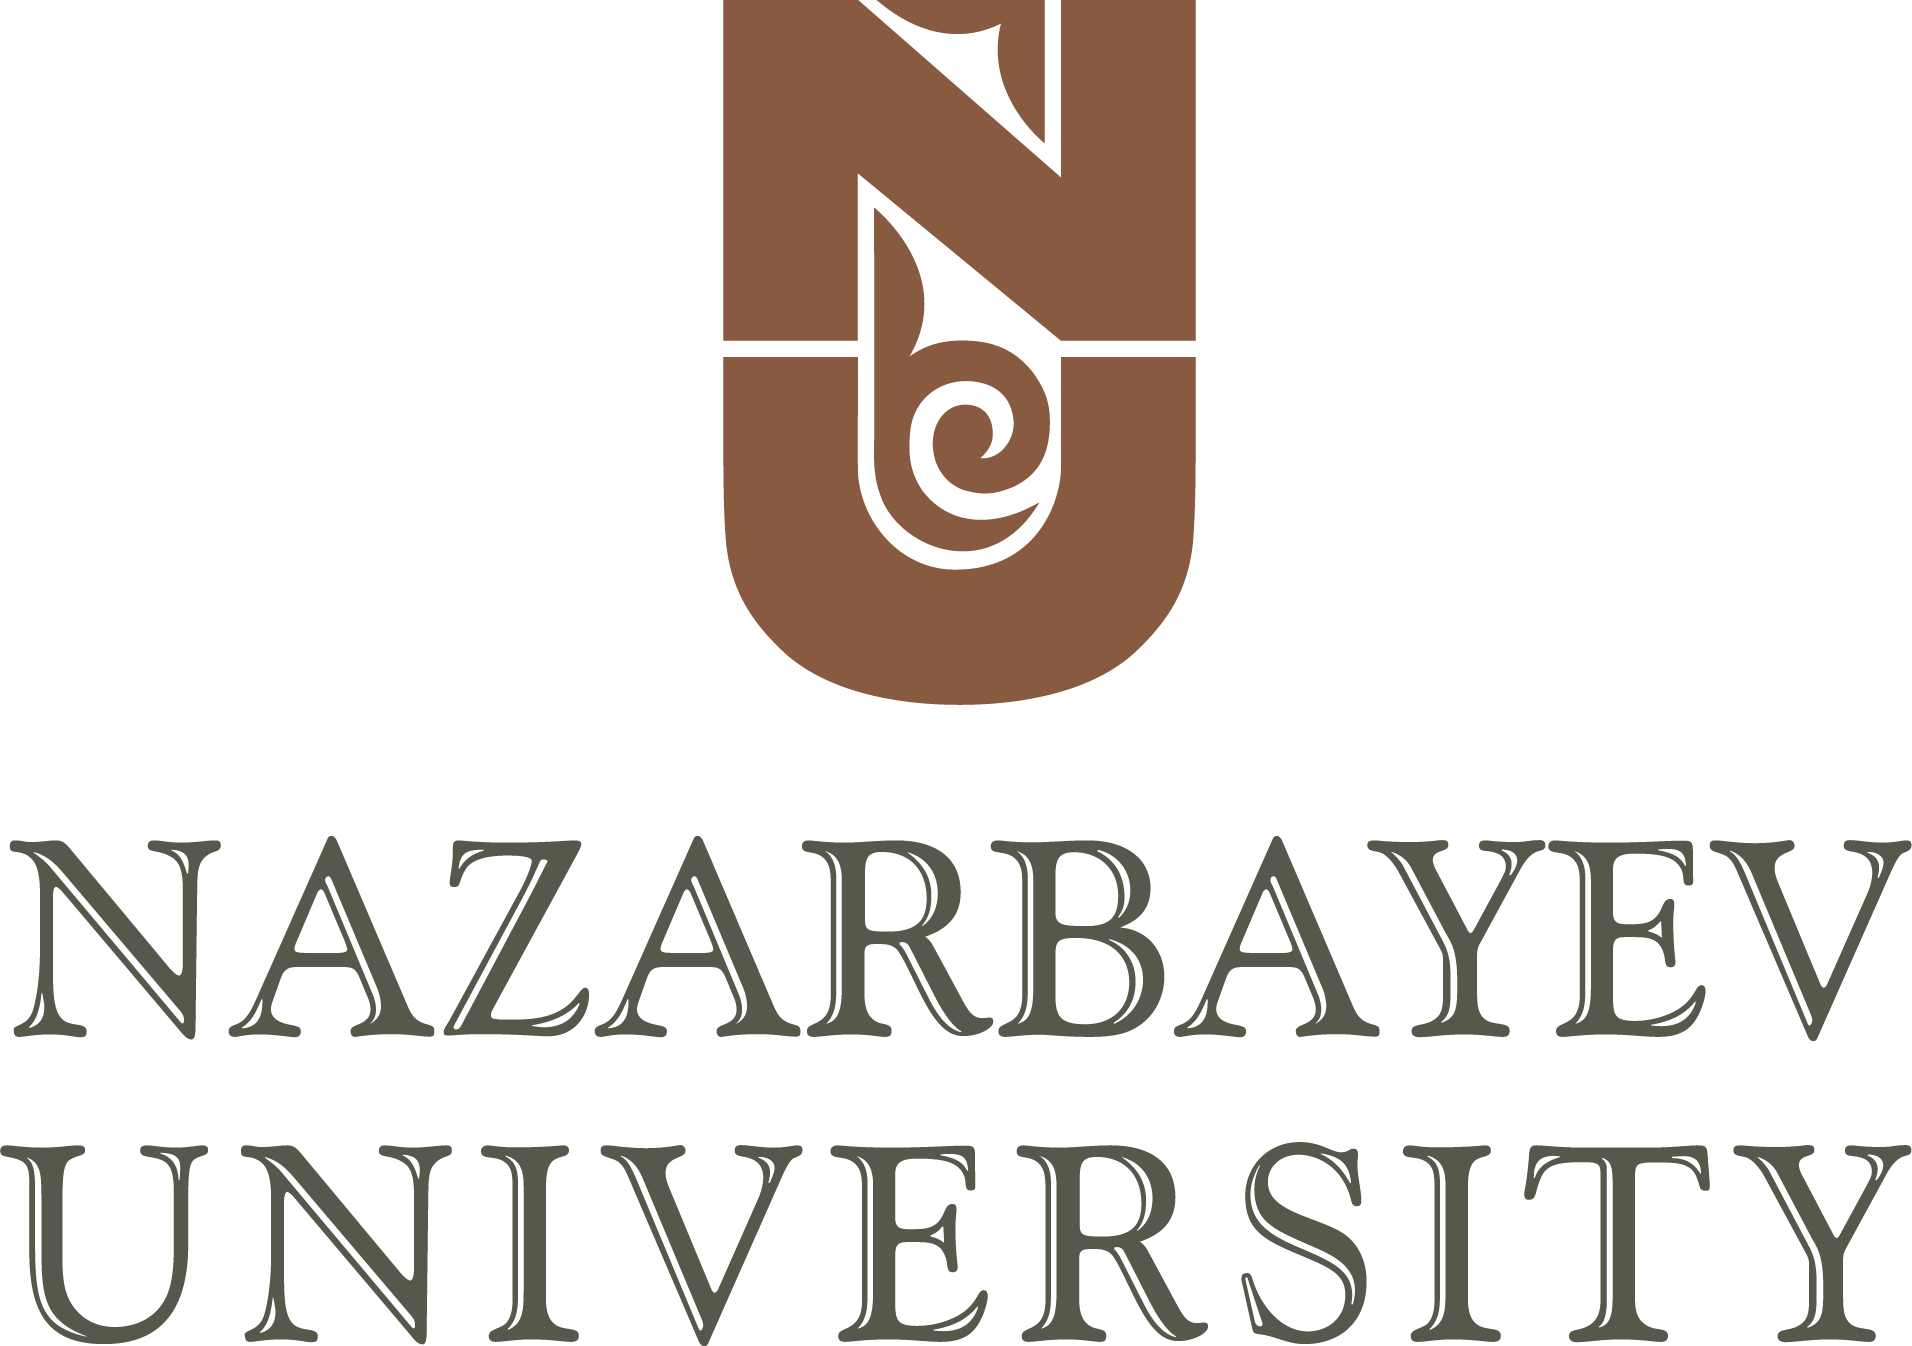 phd nazarbayev university